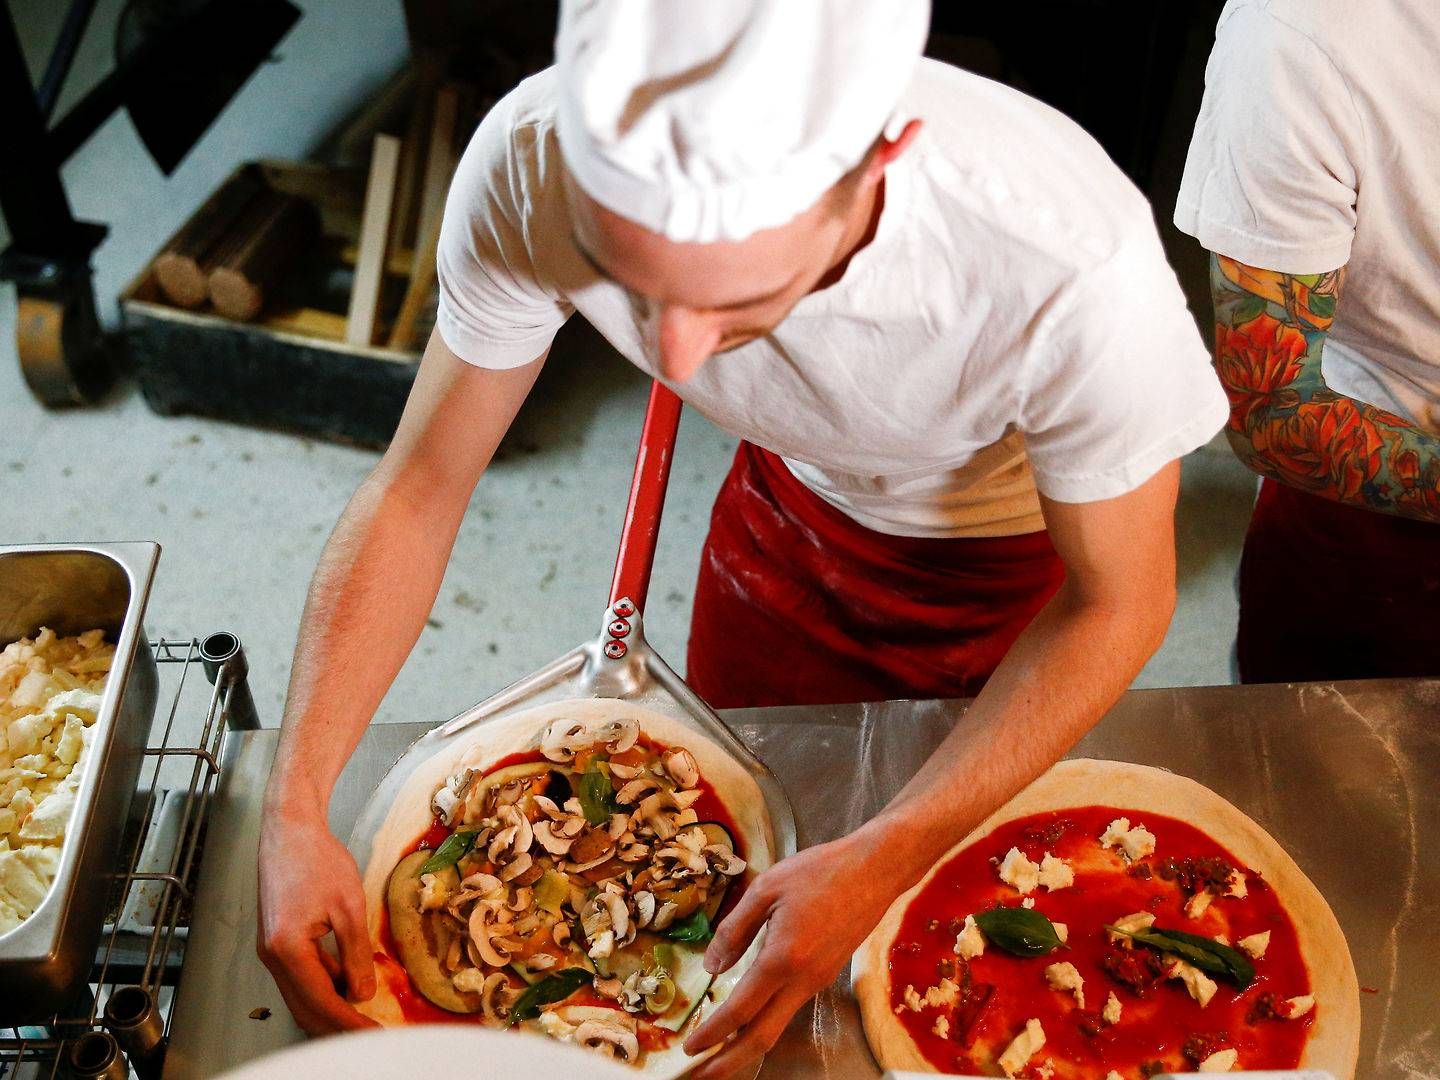 Dansk pizzatopping til de britiske pizzabagere, lyder forhåbningerne fra Danish Crown Foods til genåbningerne. | Foto: Henry Nicholls/Reuters/Ritzau Scanpix